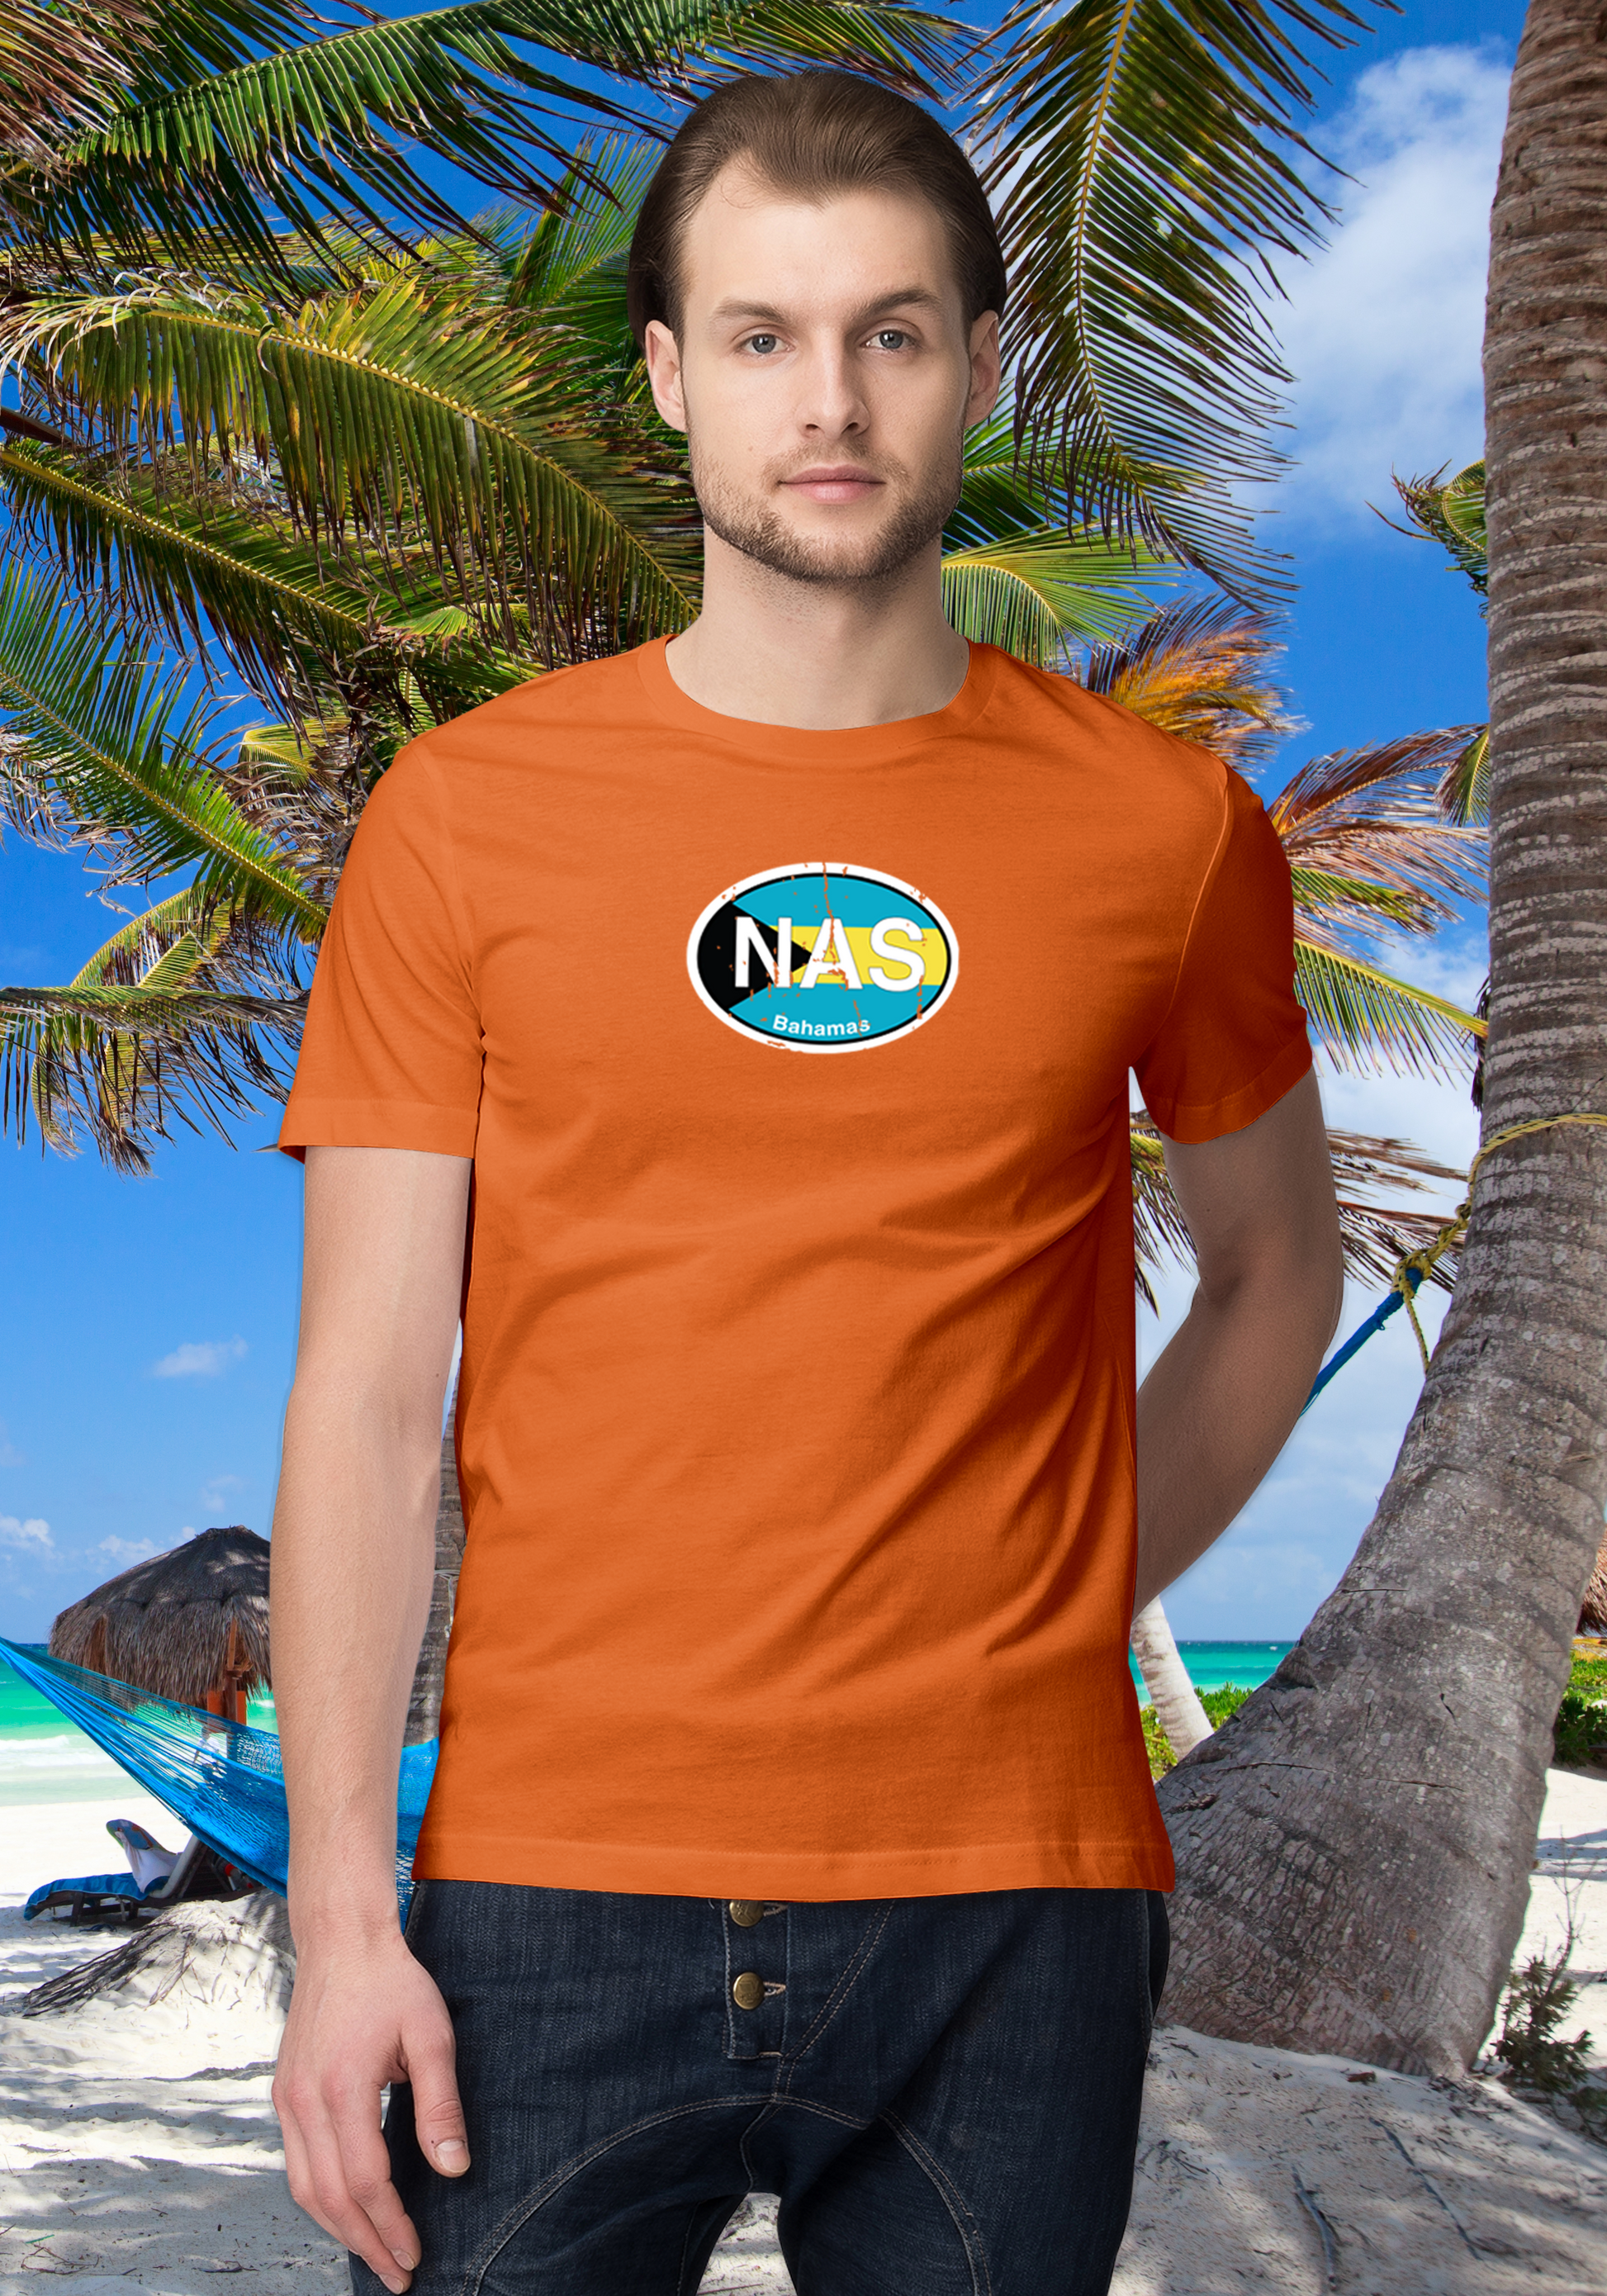 Nassau Men's Flag T-Shirt Souvenirs - My Destination Location